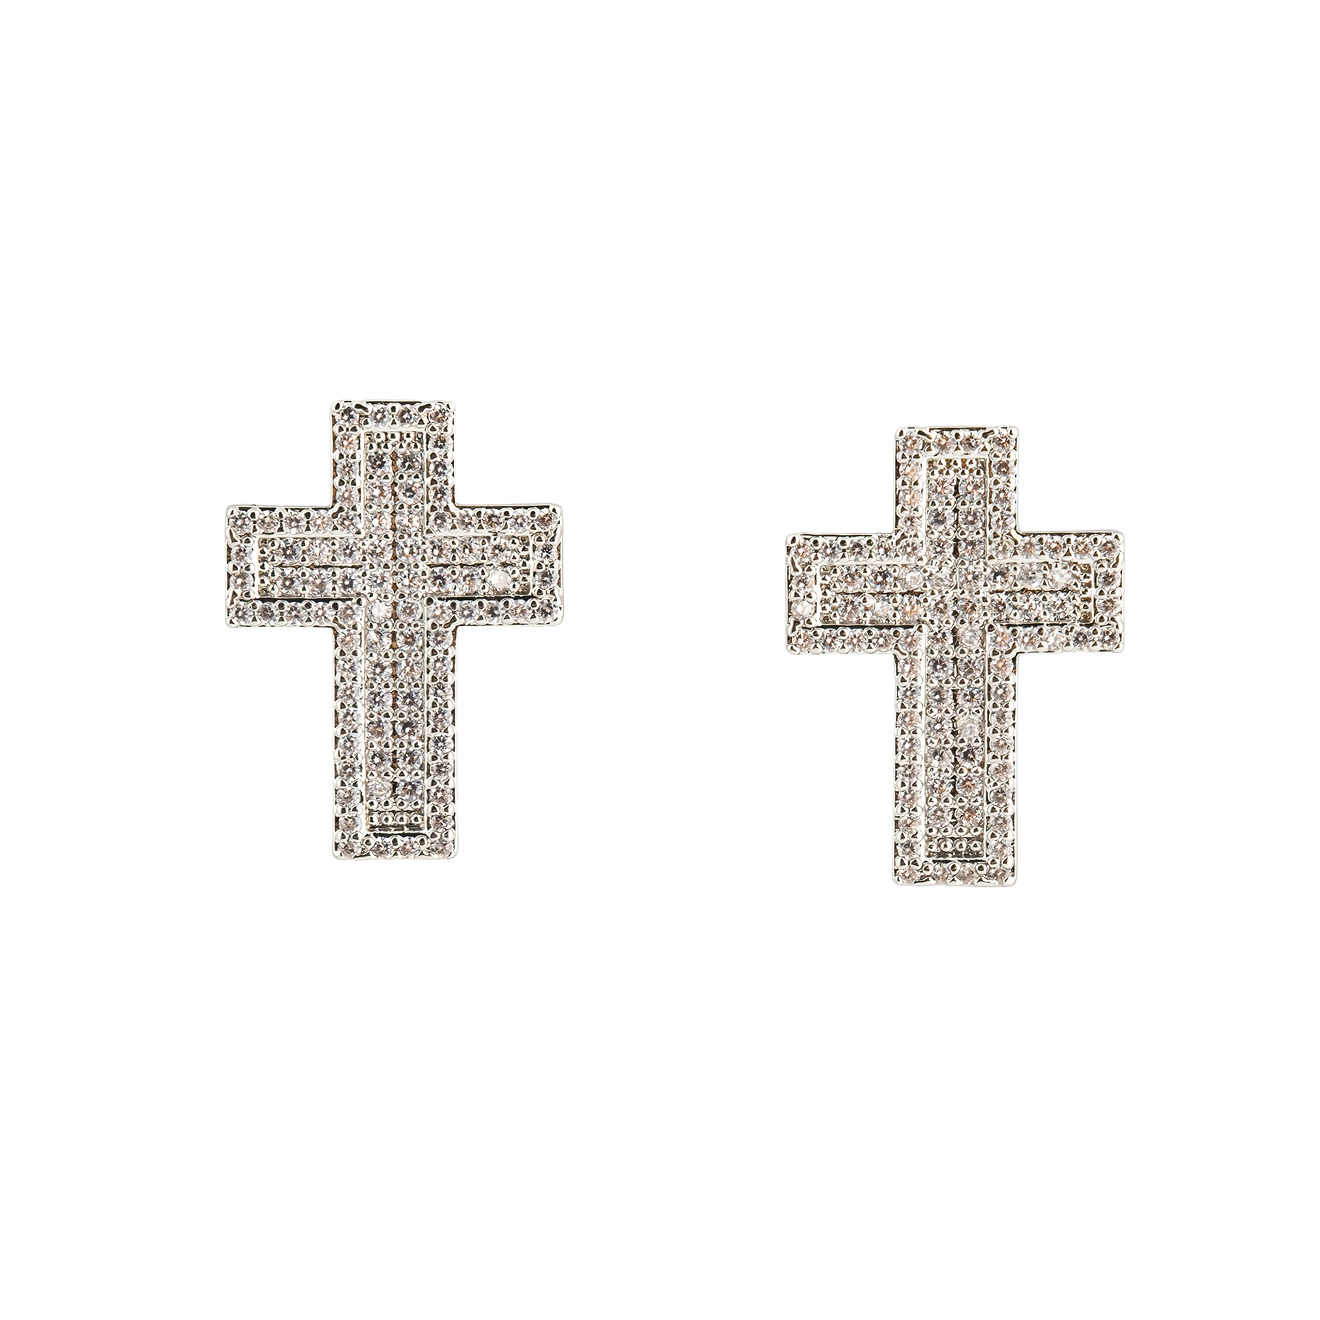 Herald Percy Серебристые серьги-кресты с кристалами фотографии